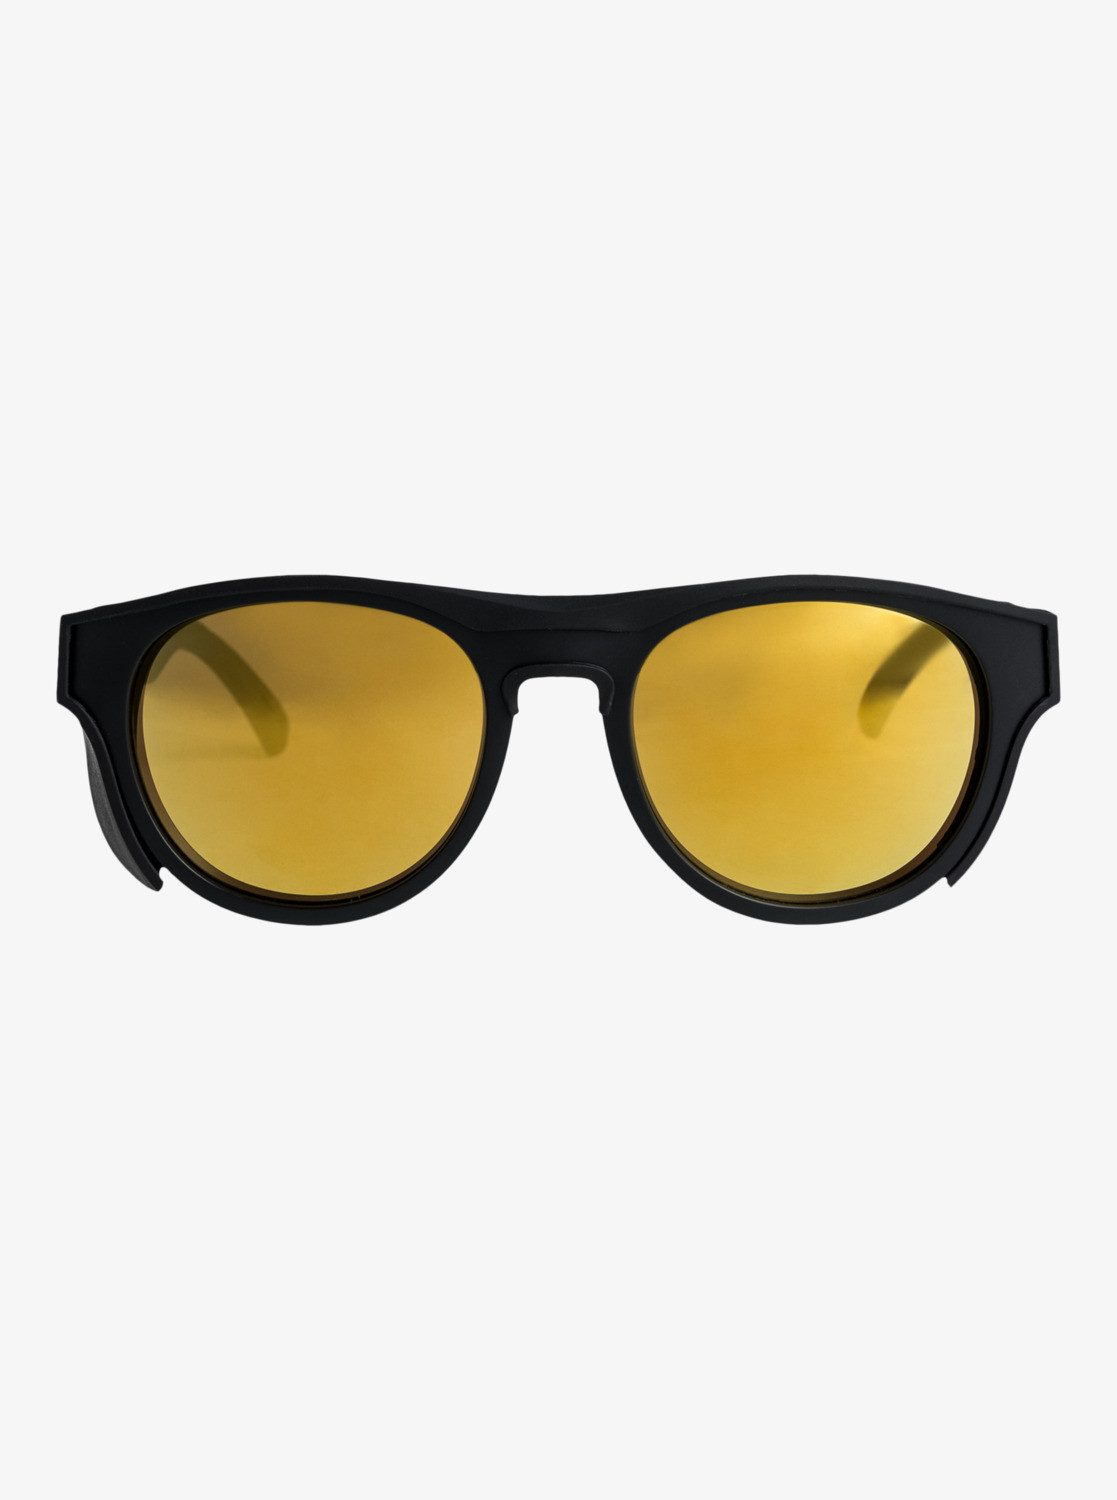 Quiksilver Eliminator+ Black/Flash Sonnenbrille Gold